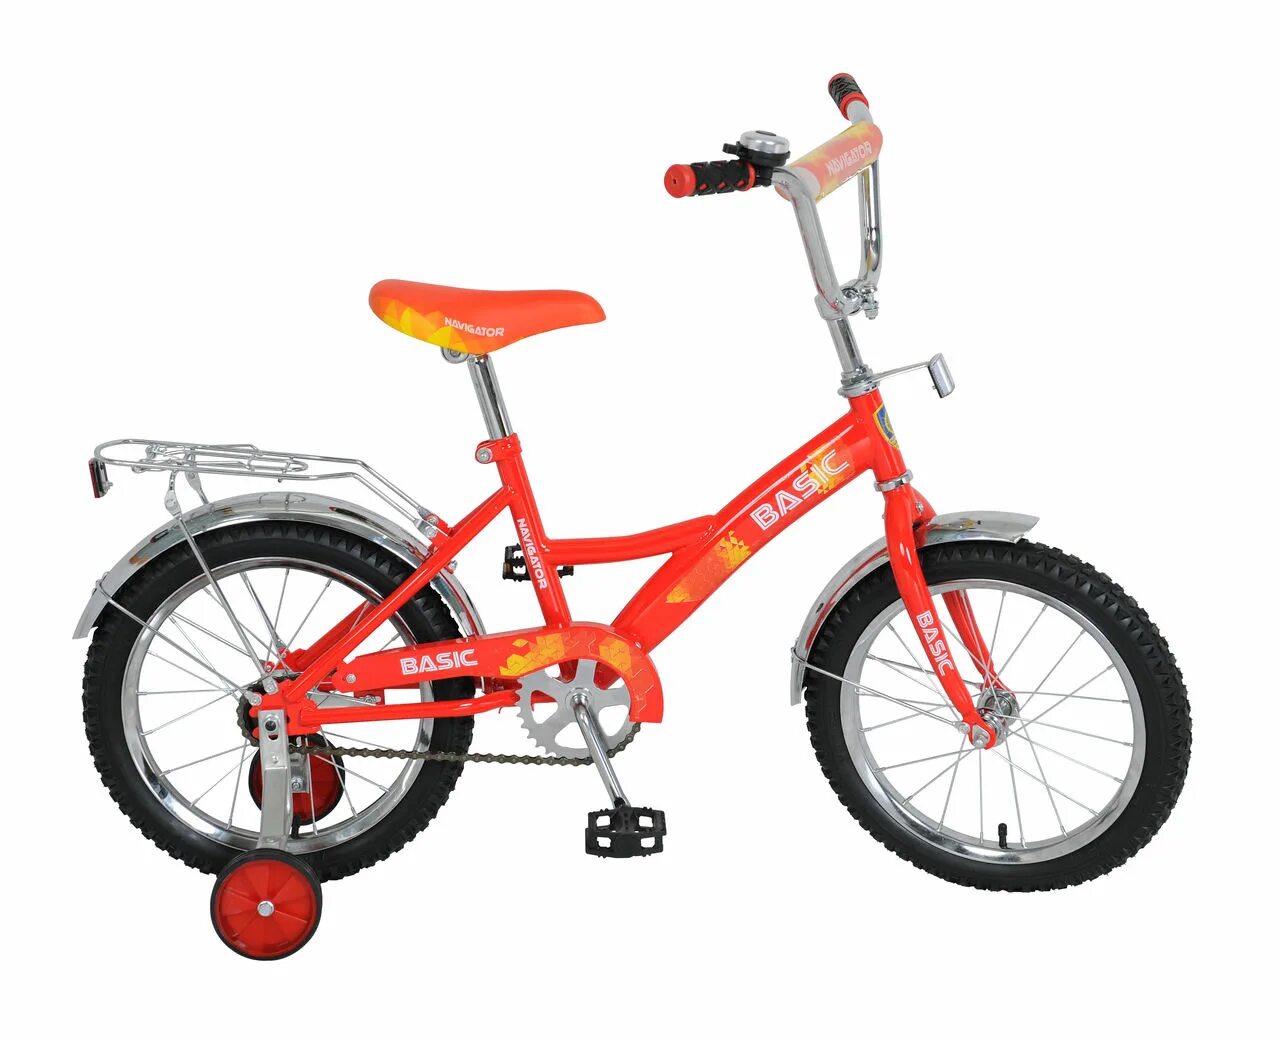 Красный велик маленький. Велосипед Navigator Basic 16. Навигатор Базик 16 велосипед детский. Велосипед навигатор Басик детский 16 дюймов. Велосипед Navigator Basic 16 дюймов вн16155дм.